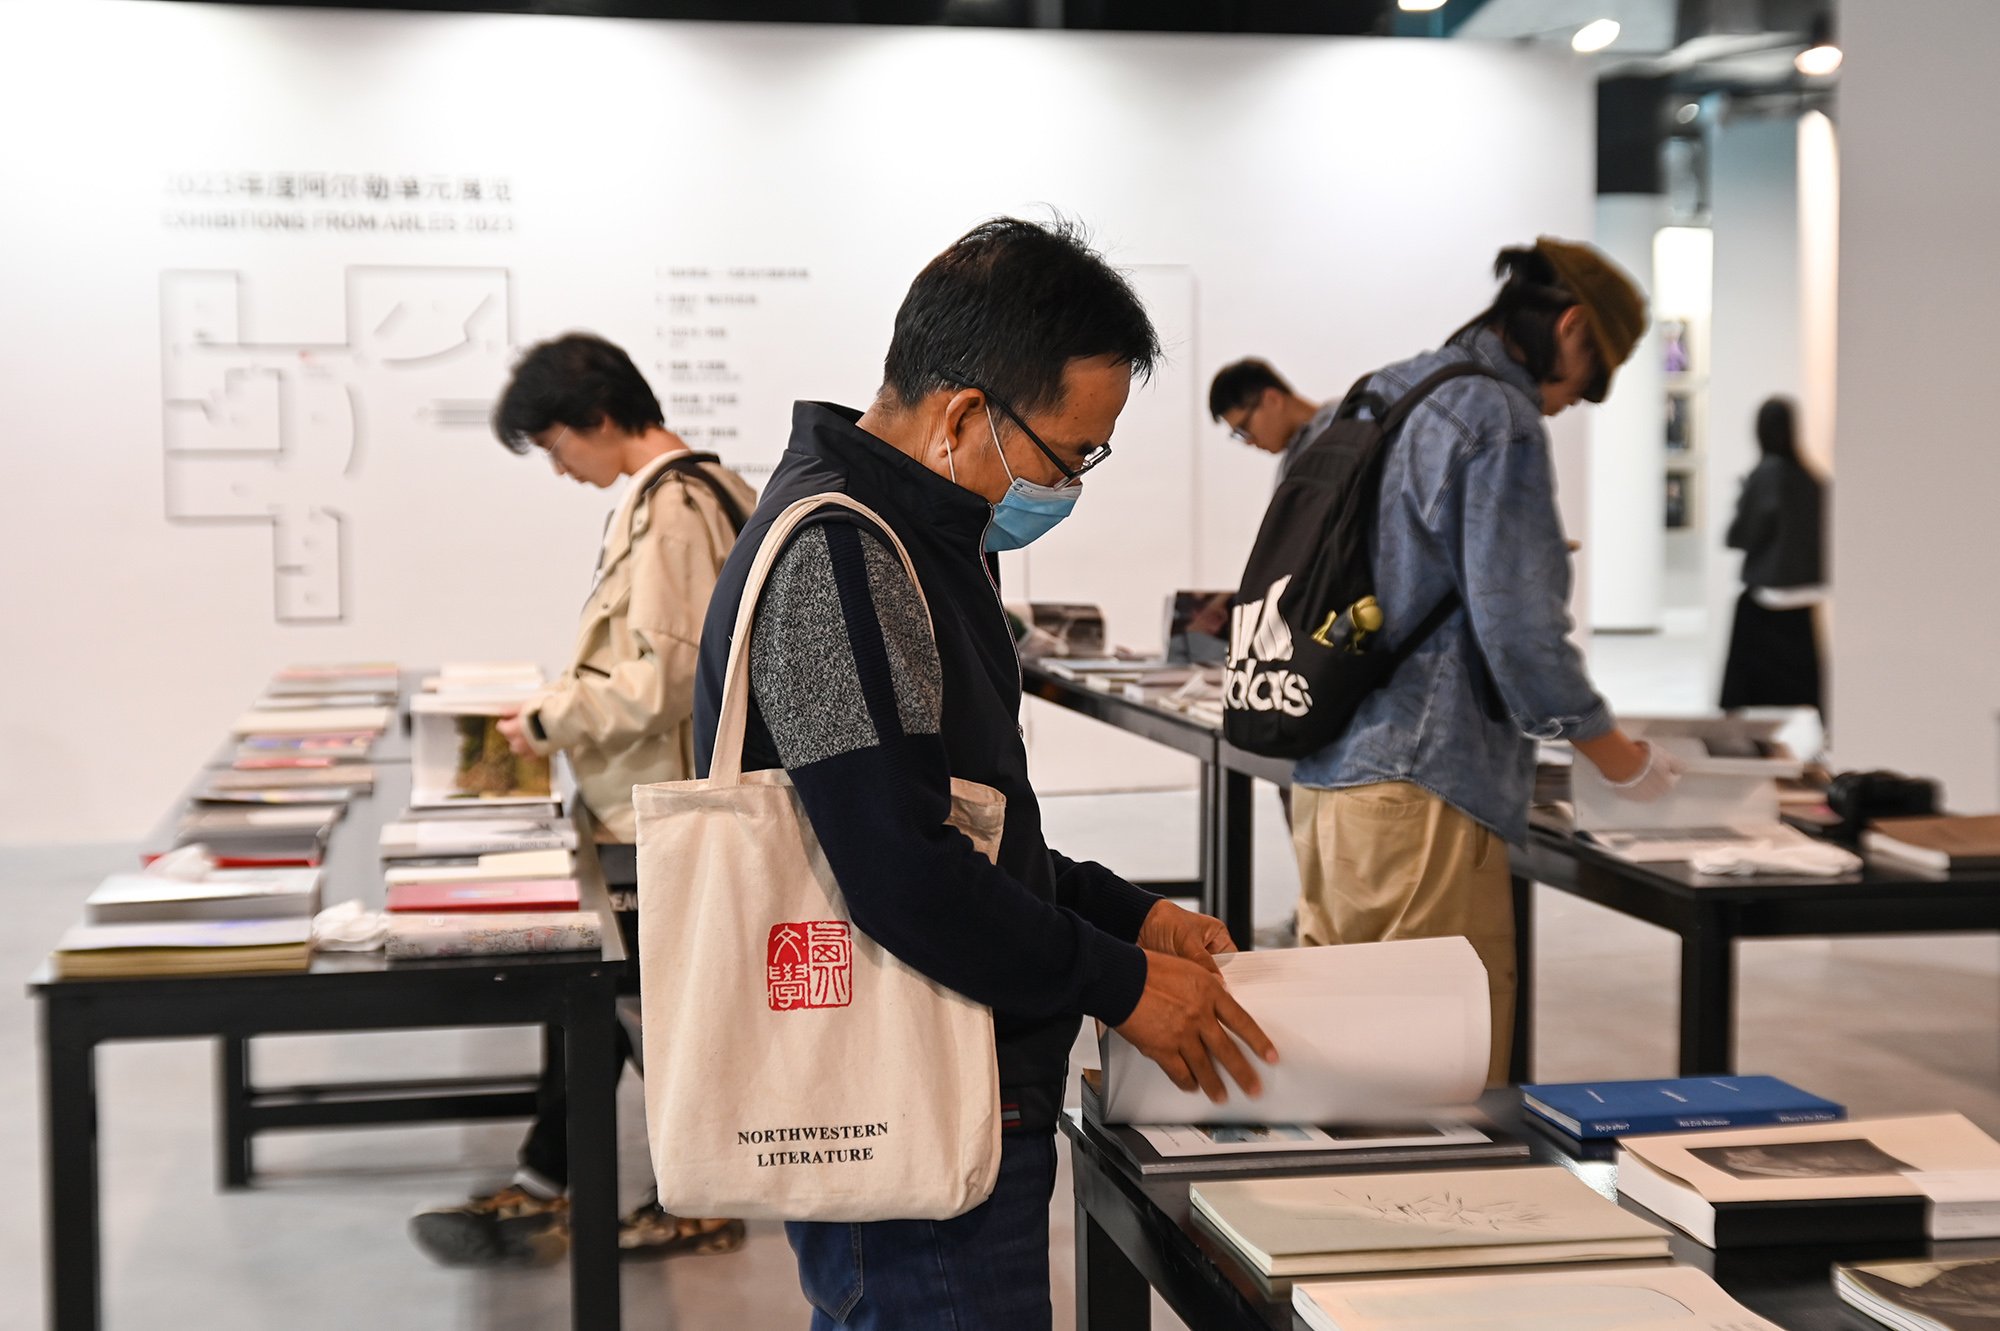 展览现场，观展者在集美·阿尔勒图书展上翻书。